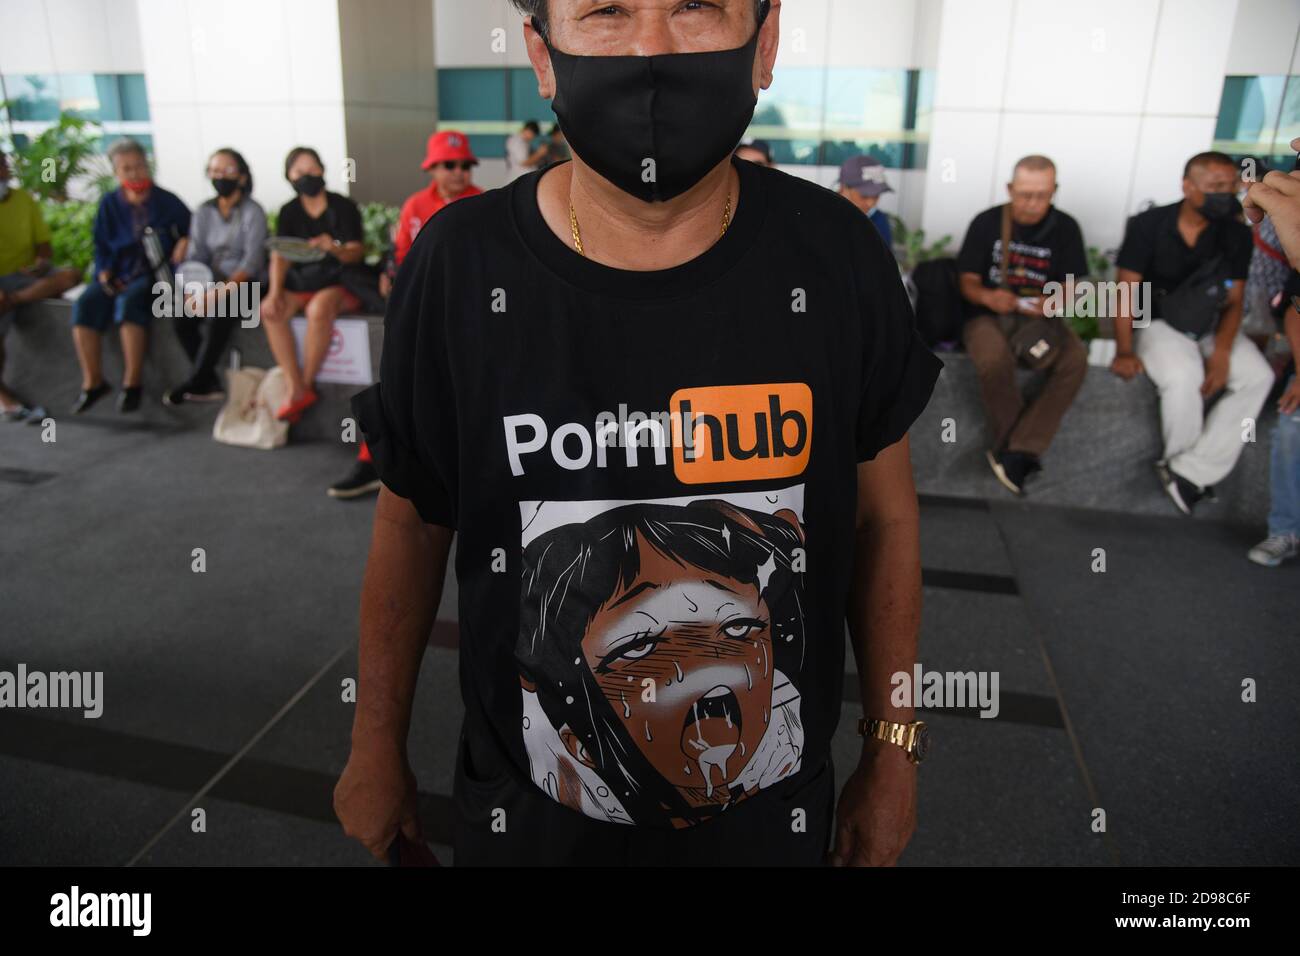 Un protetore vestito in una t-shirt Pornhub durante una